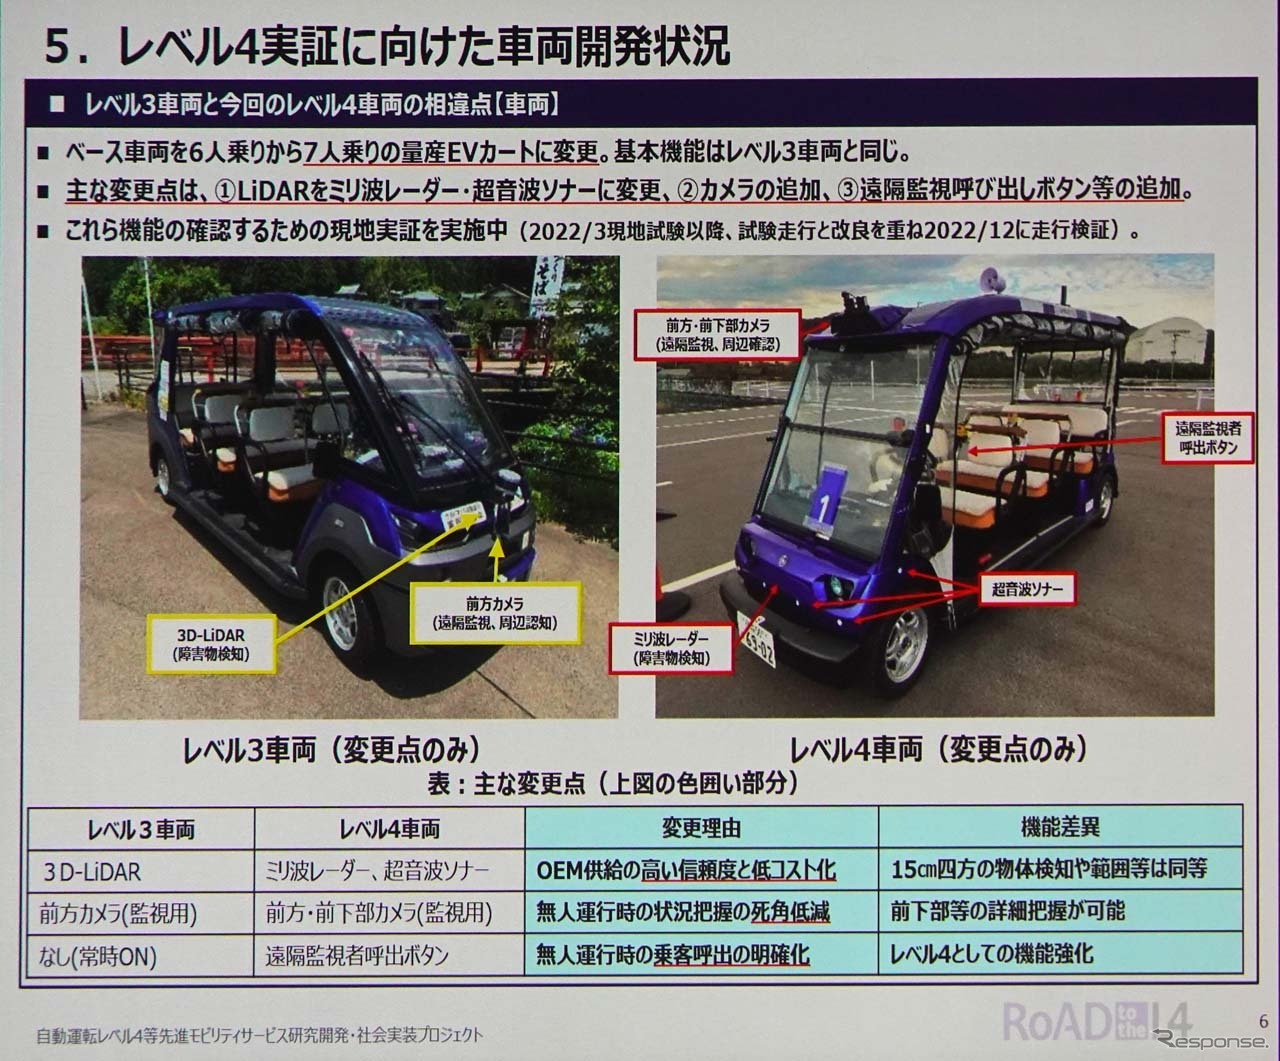 福井県永平寺町で展開されているレベル4実証に向けた車両の開発状況